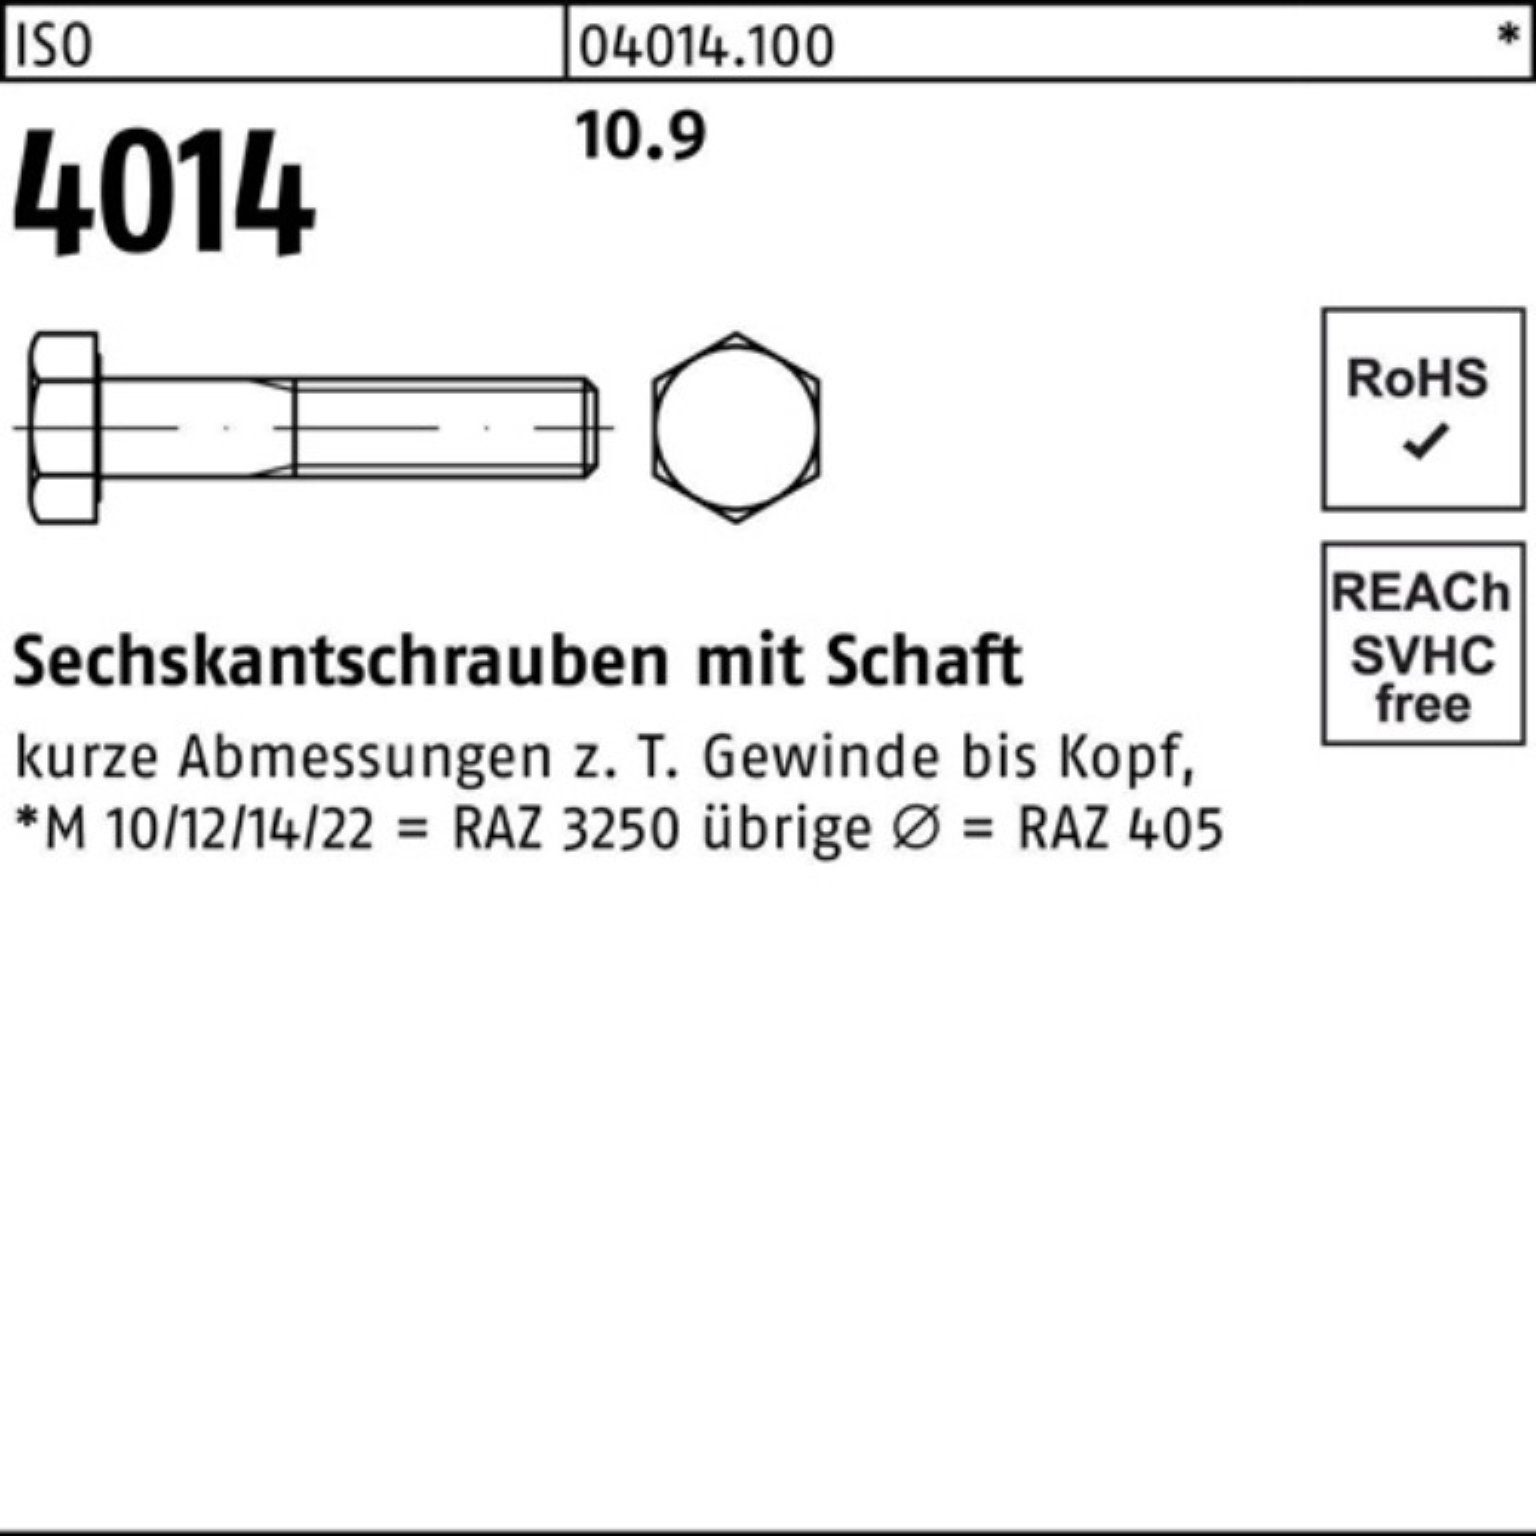 Pack Bufab Schaft Sechskantschraube 4014 I 10.9 Sechskantschraube Stück 100 M8x 110 ISO 100er